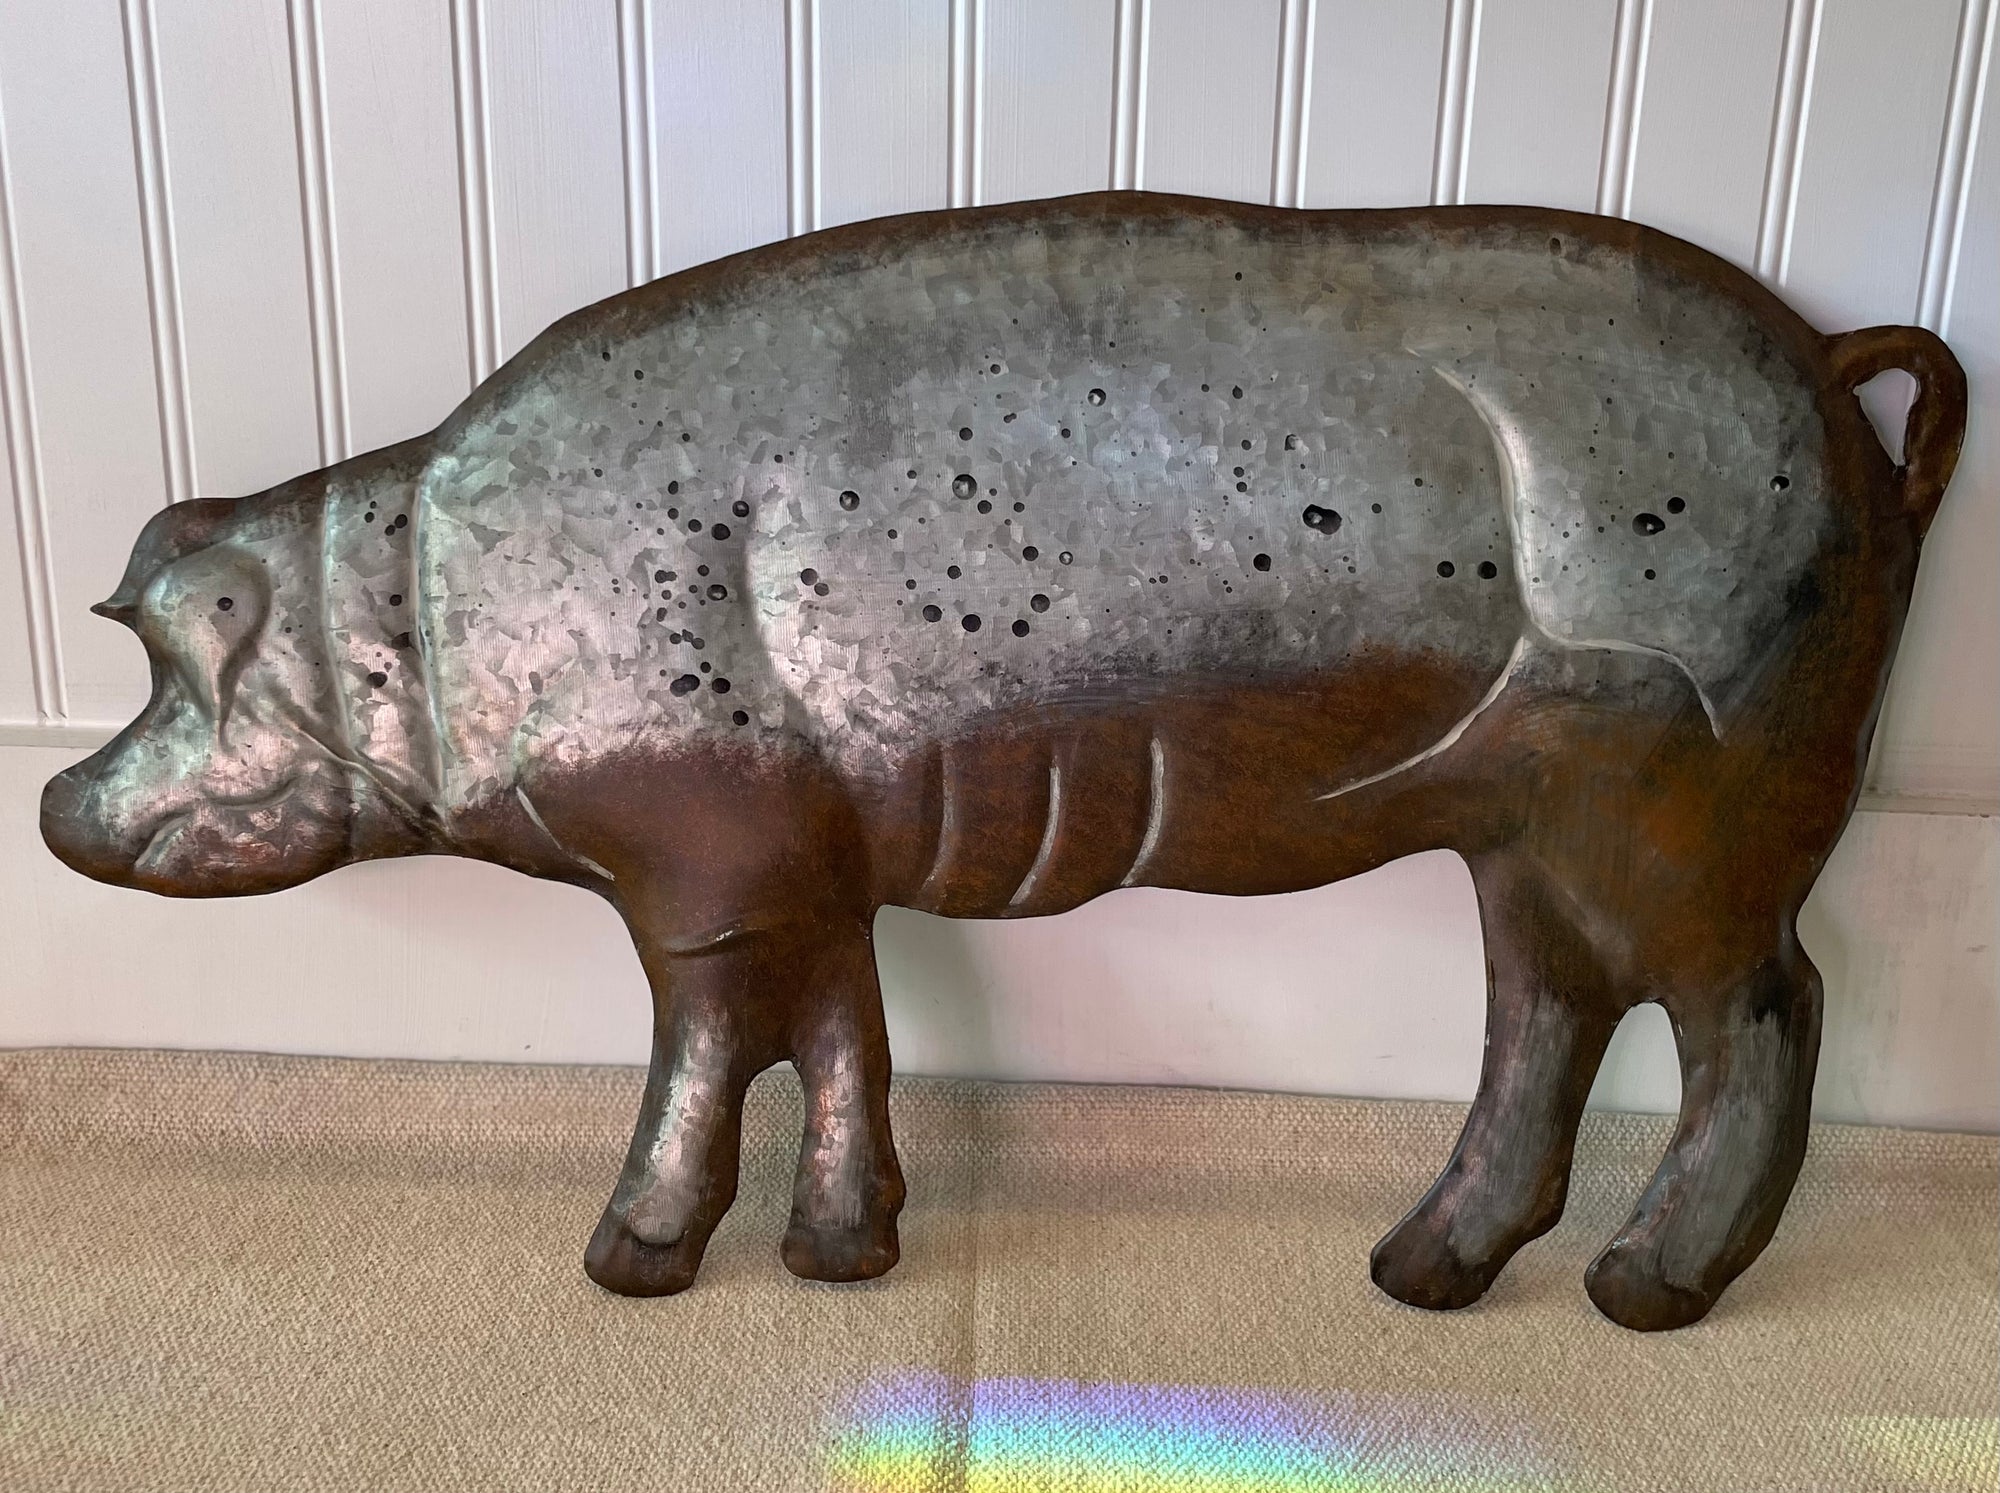 Metal Sign - Distressed Dimensional Pig